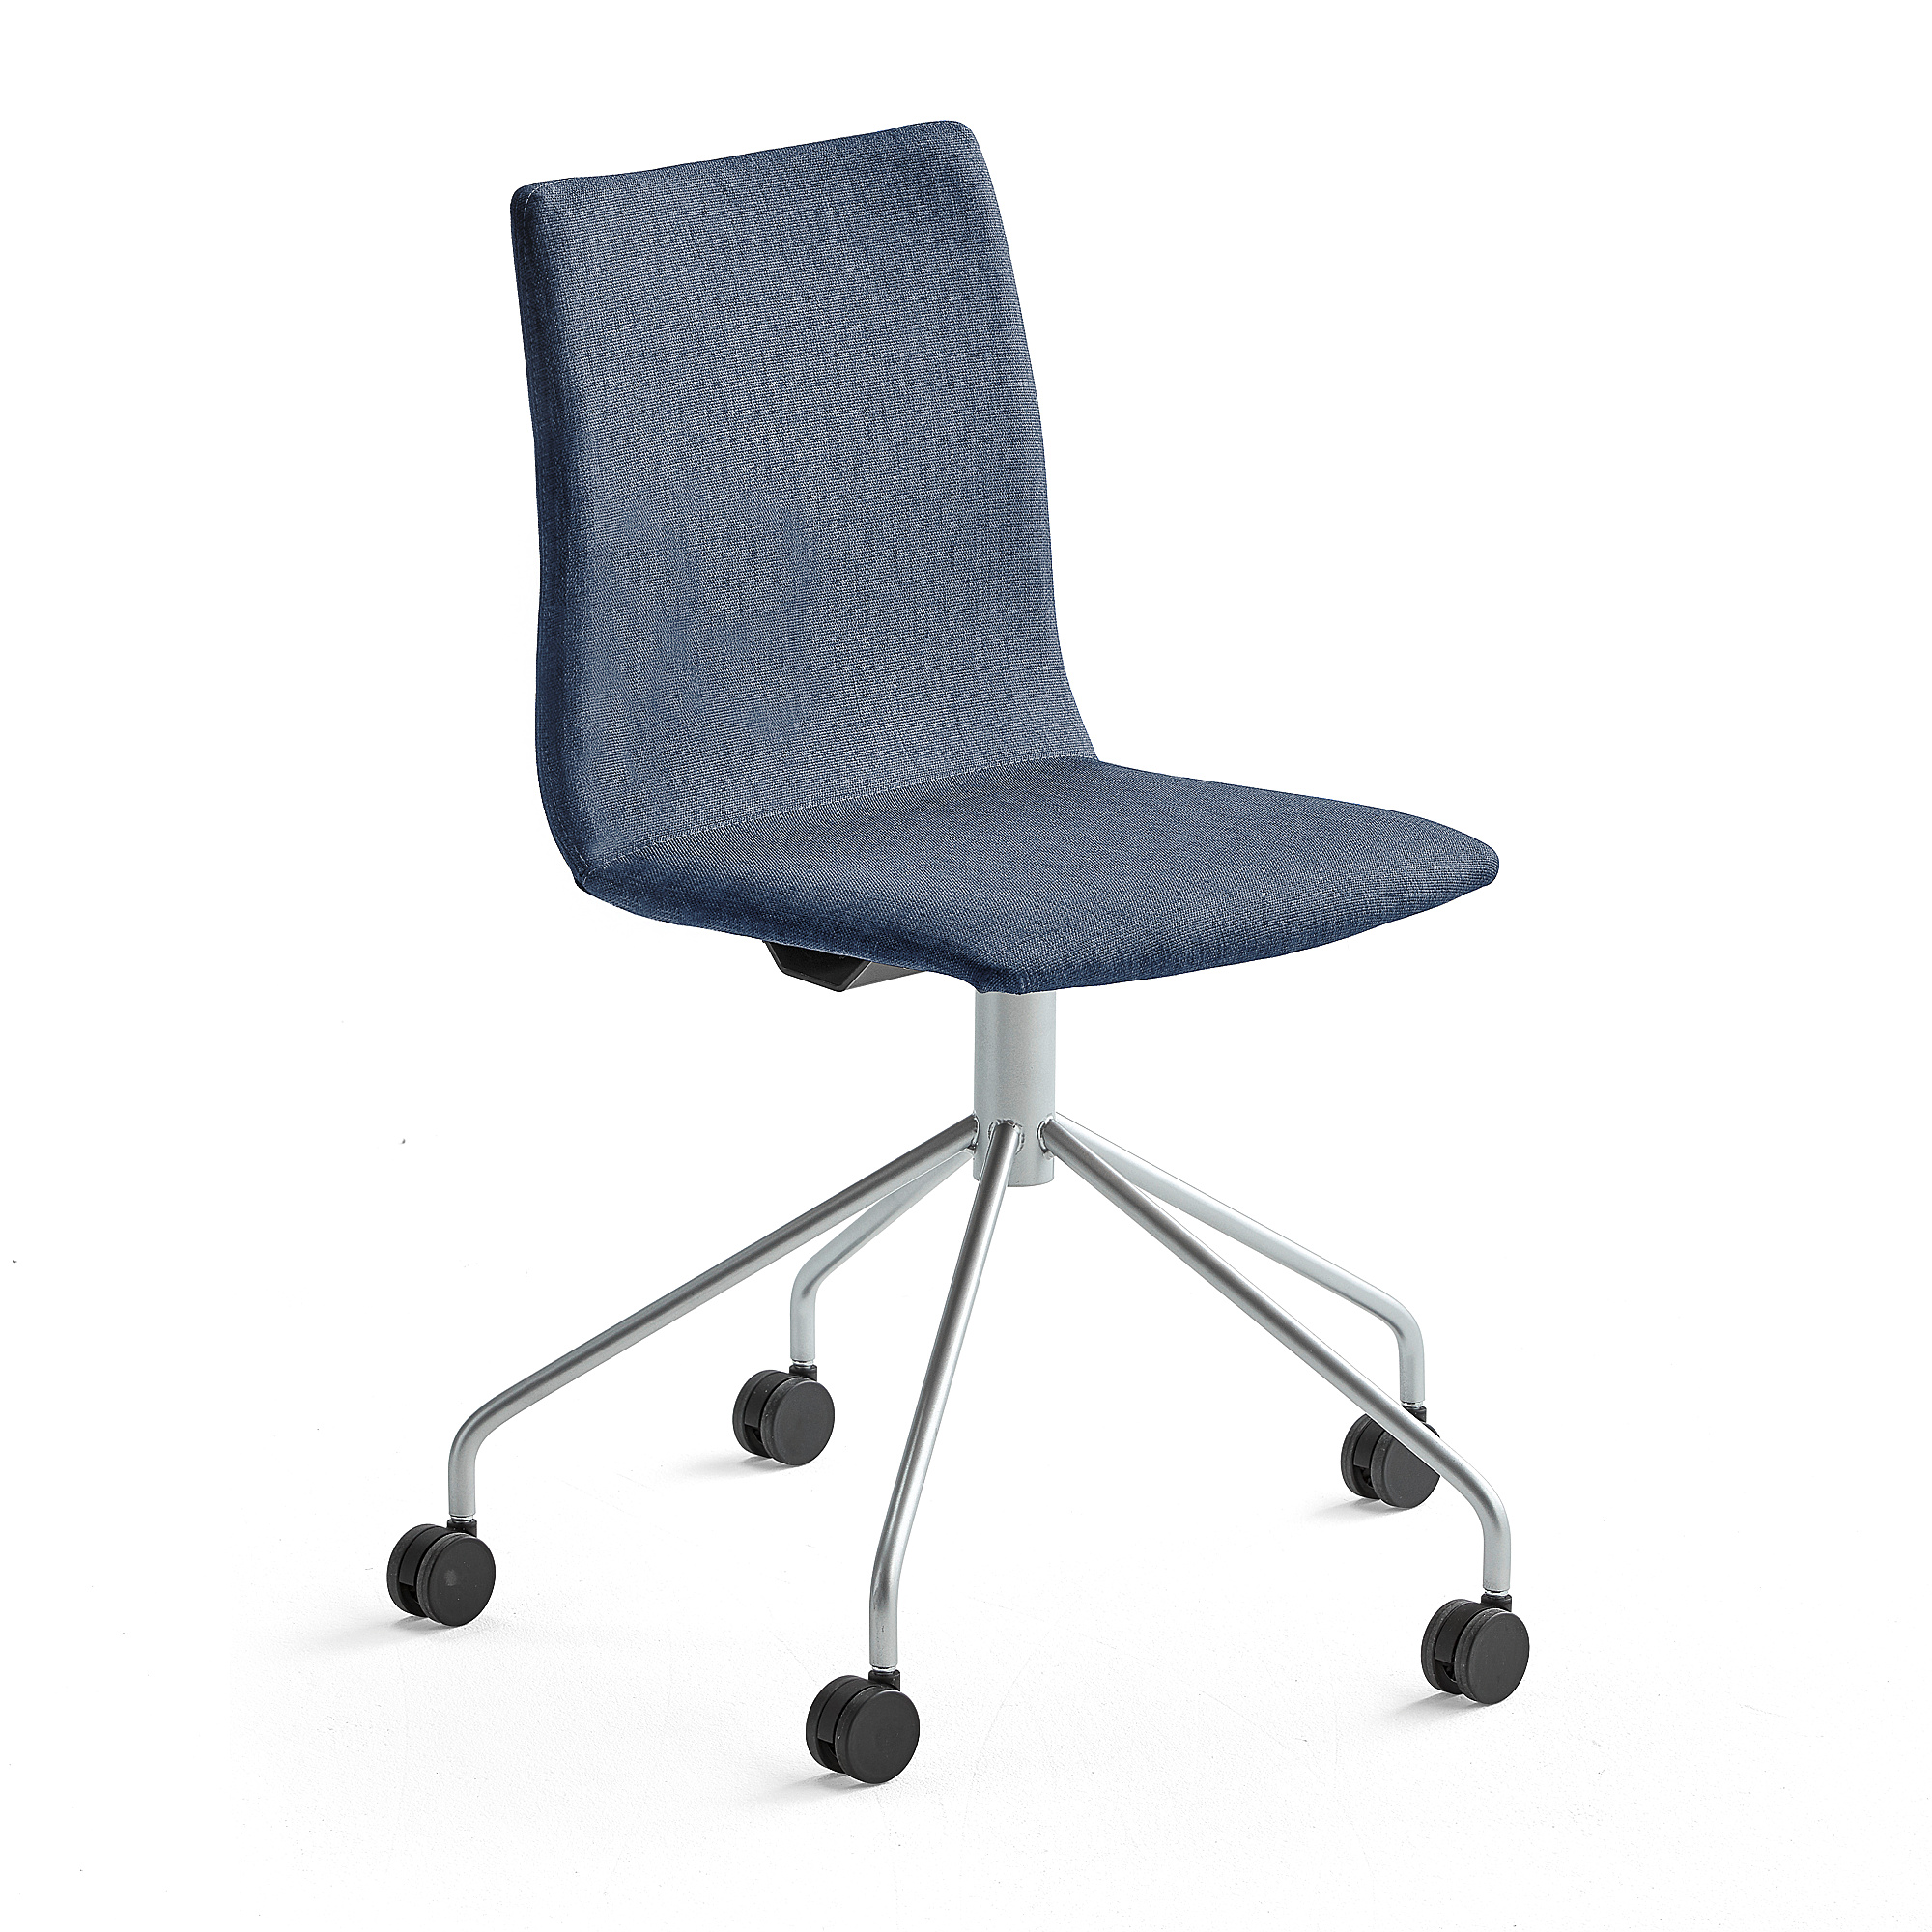 Konferenčná stolička OTTAWA, s kolieskami, modrá/šedá